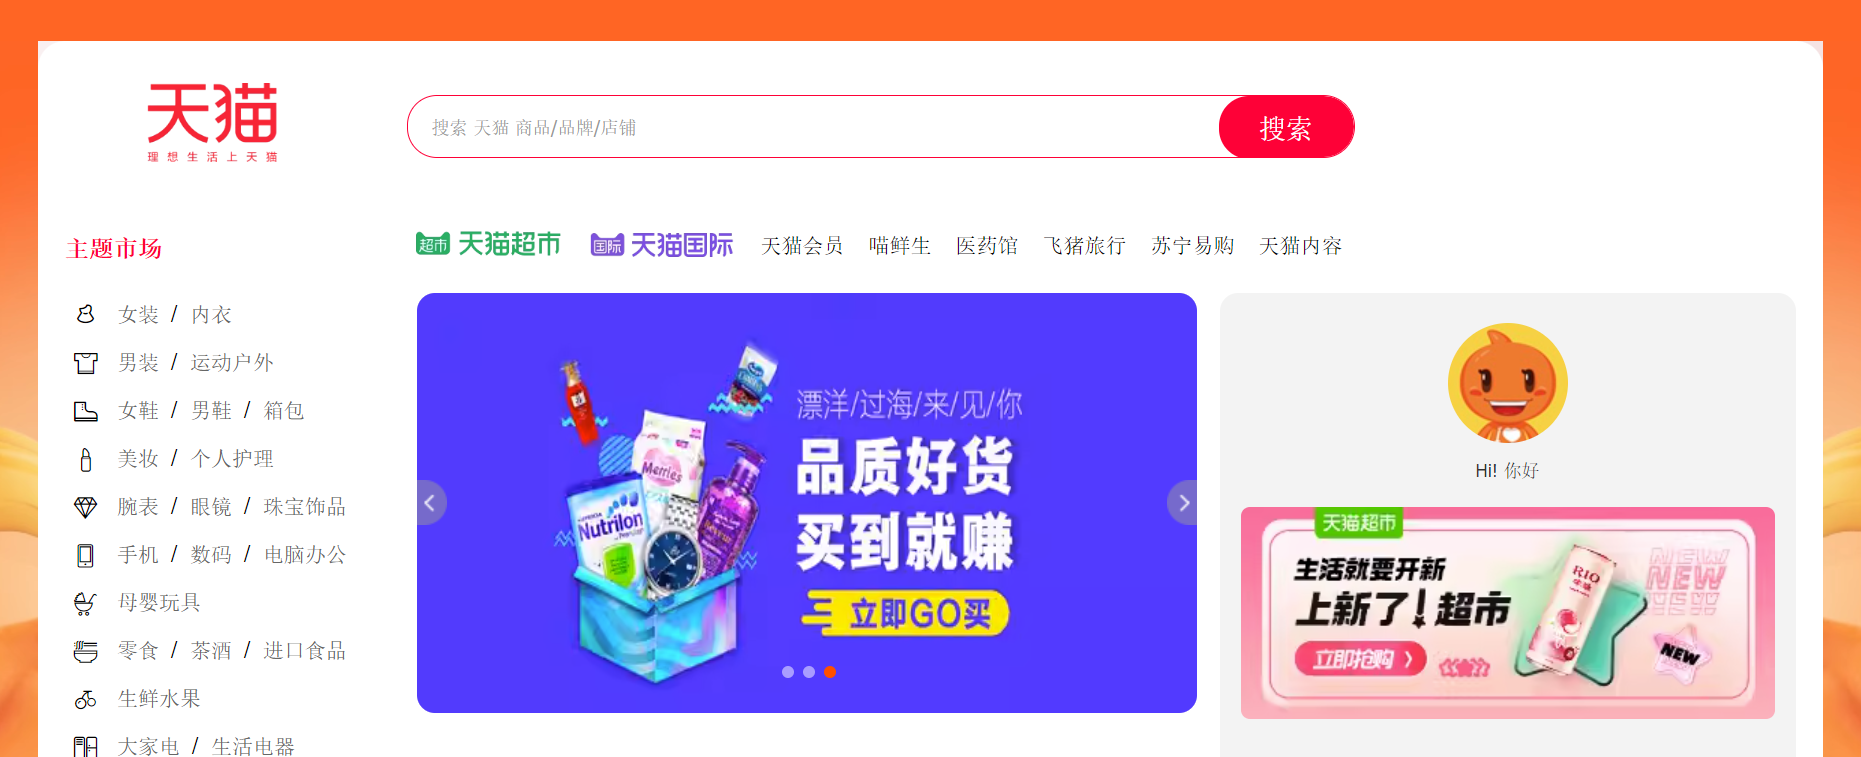 Tmall.com là trang mua hàng Trung Quốc chất lượng